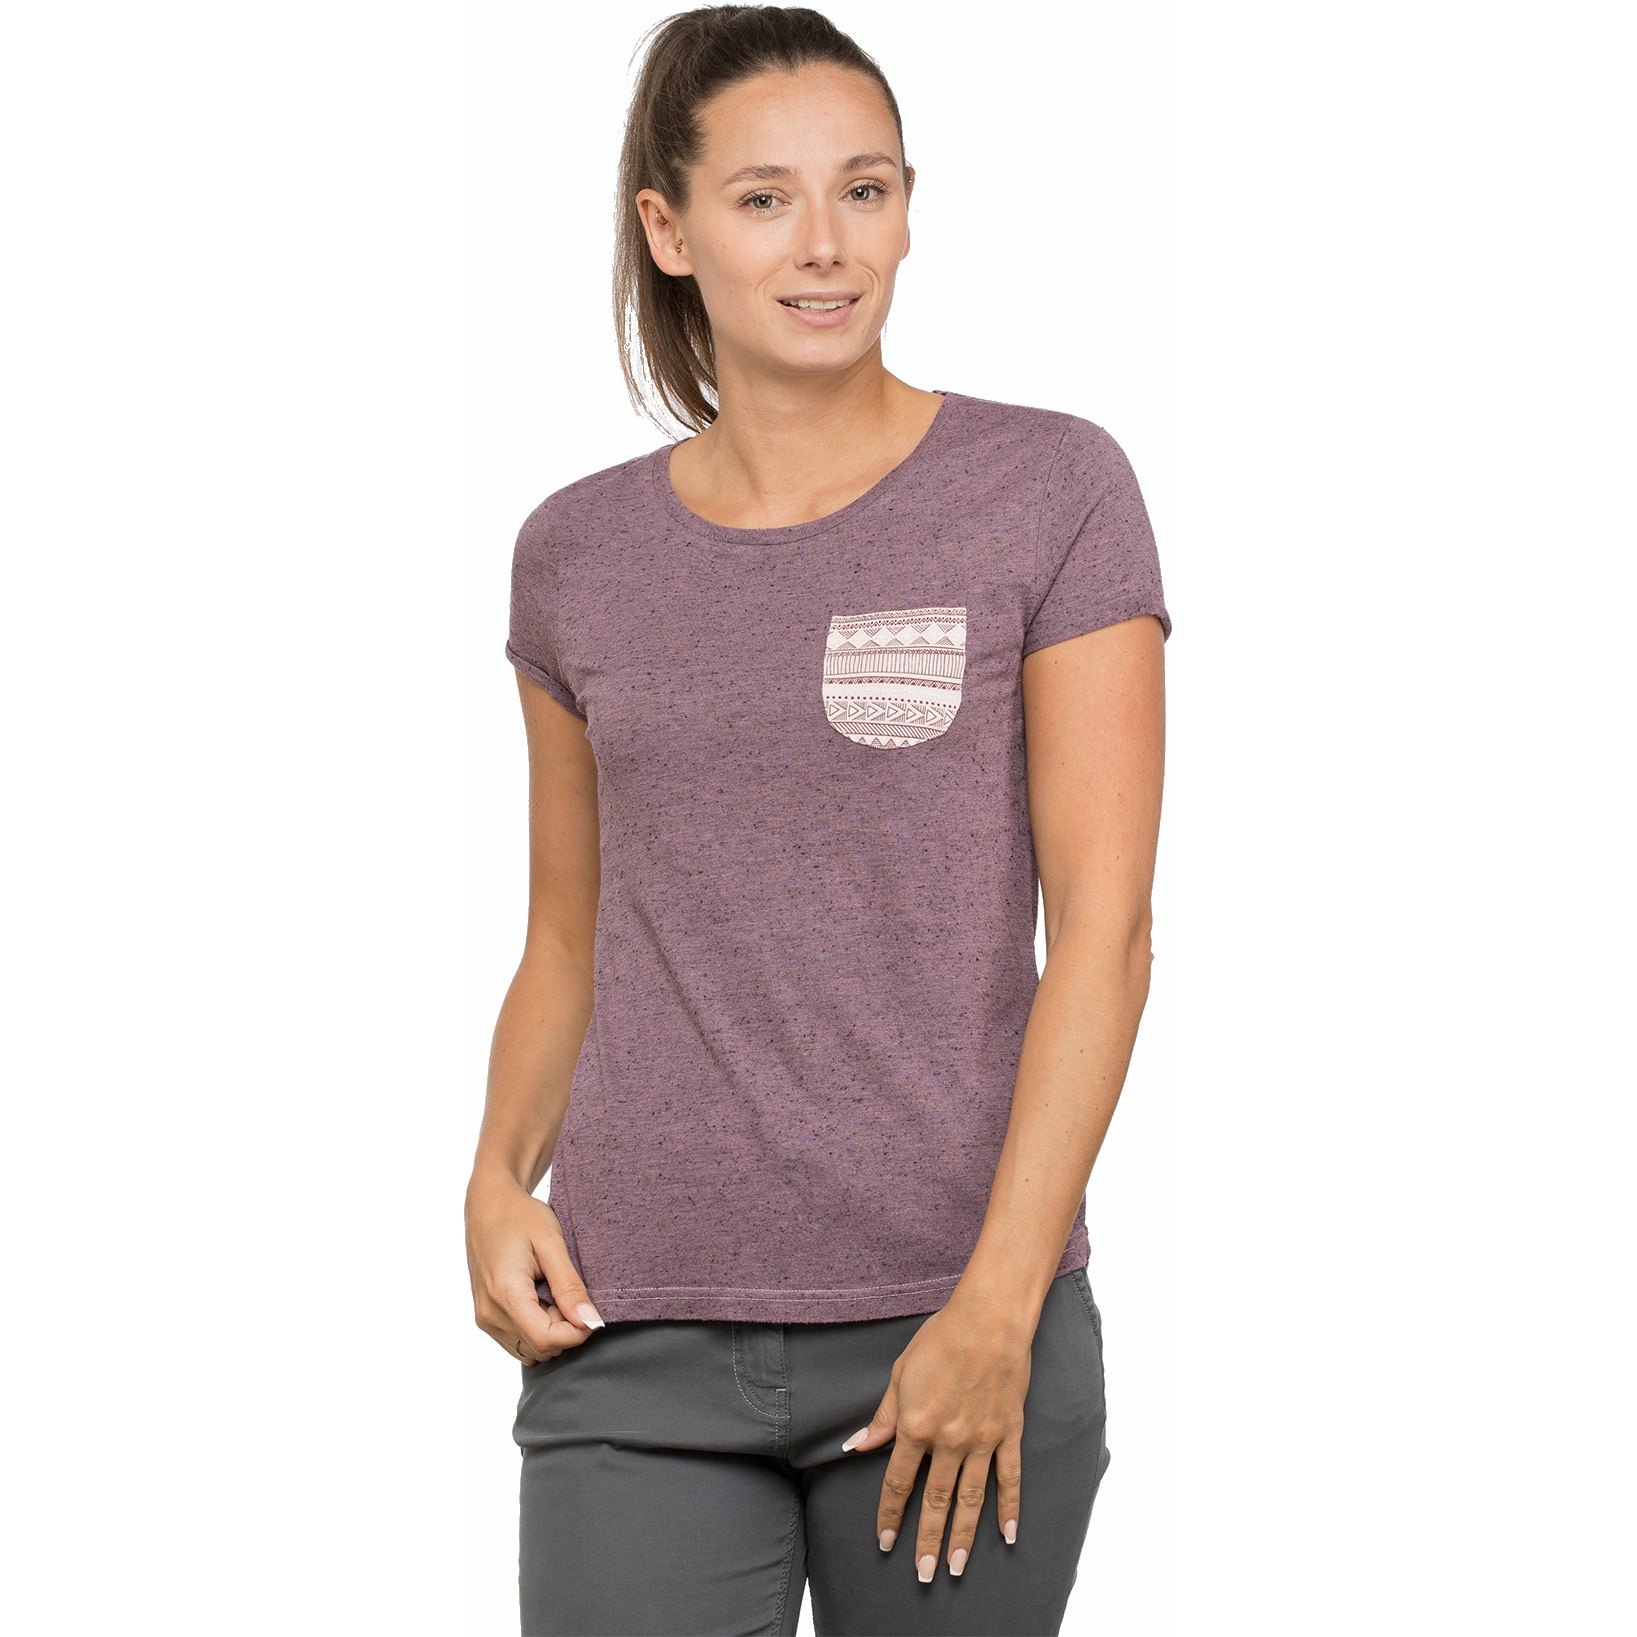 Produktbild von Chillaz Istrien T-Shirt Damen - violet